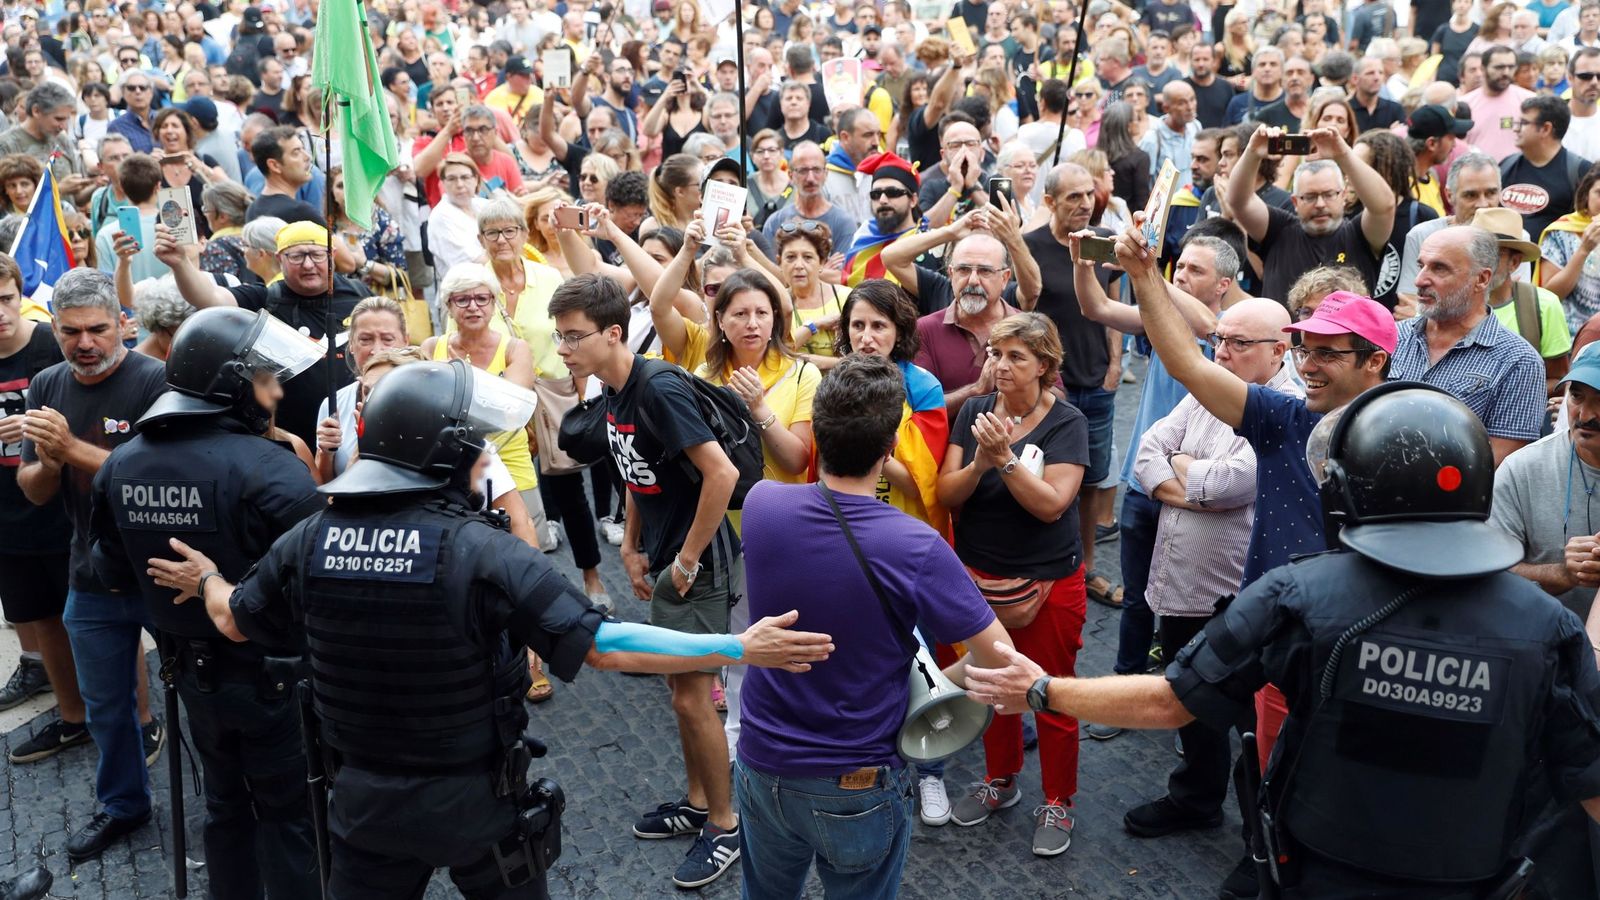 Foto: Grupo de soberanistas se concentraron el domingo en la plaza Sant Jaume donde la asociación Hablamos Español habia convocado otra manifestación "contra la imposición lingüística". (EFE)